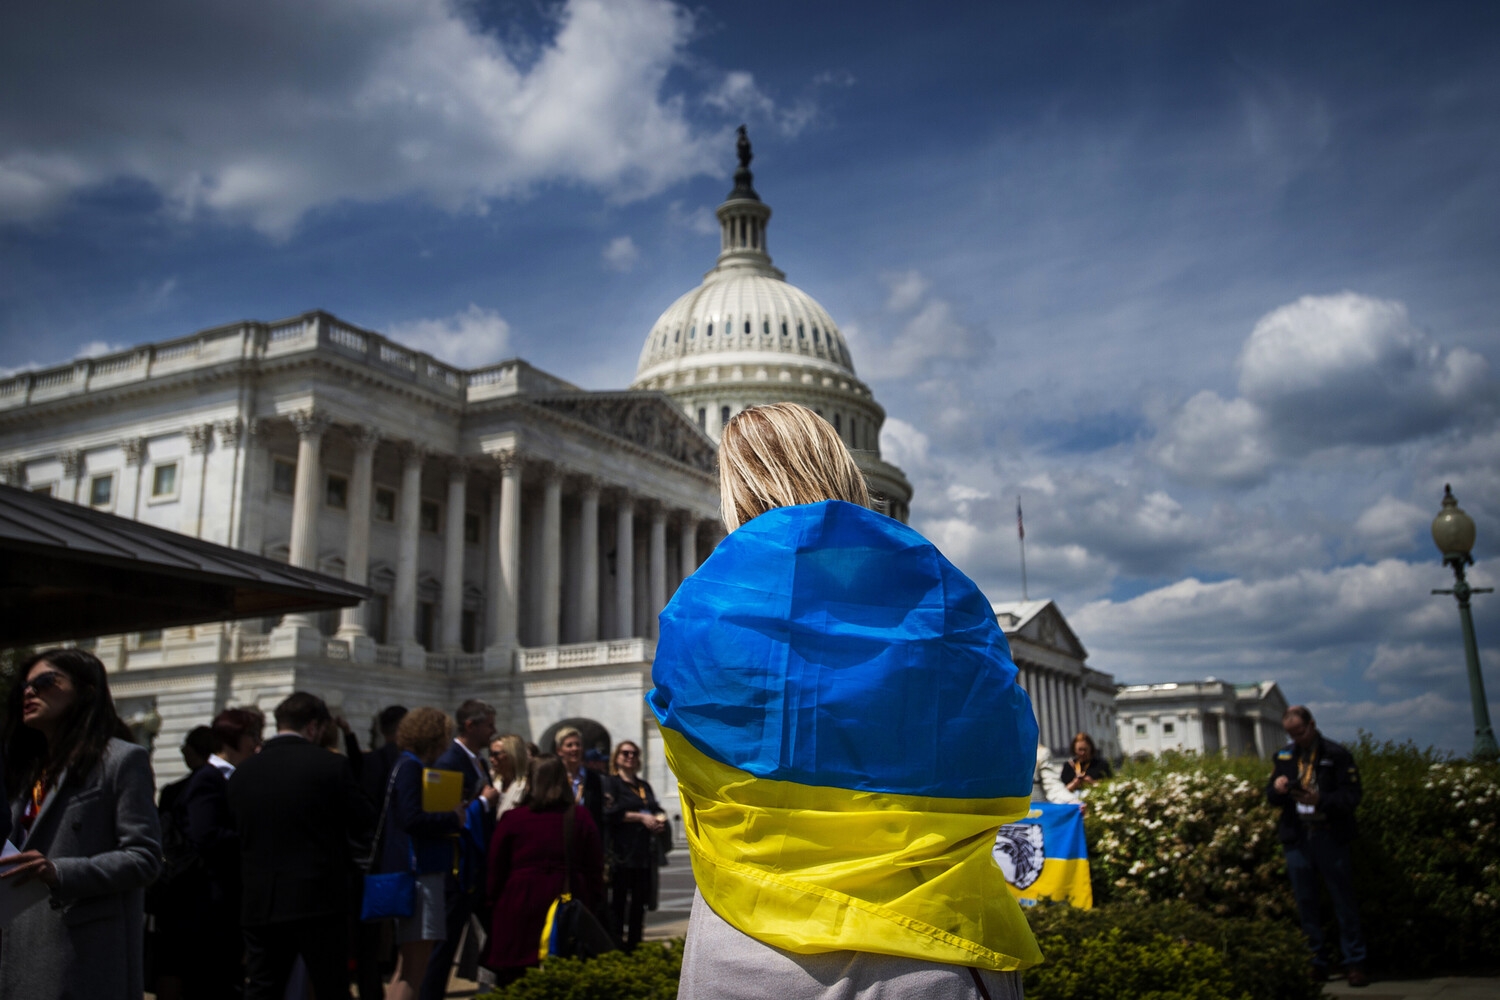 Украину предупредили о надвигающейся катастрофе из-за США